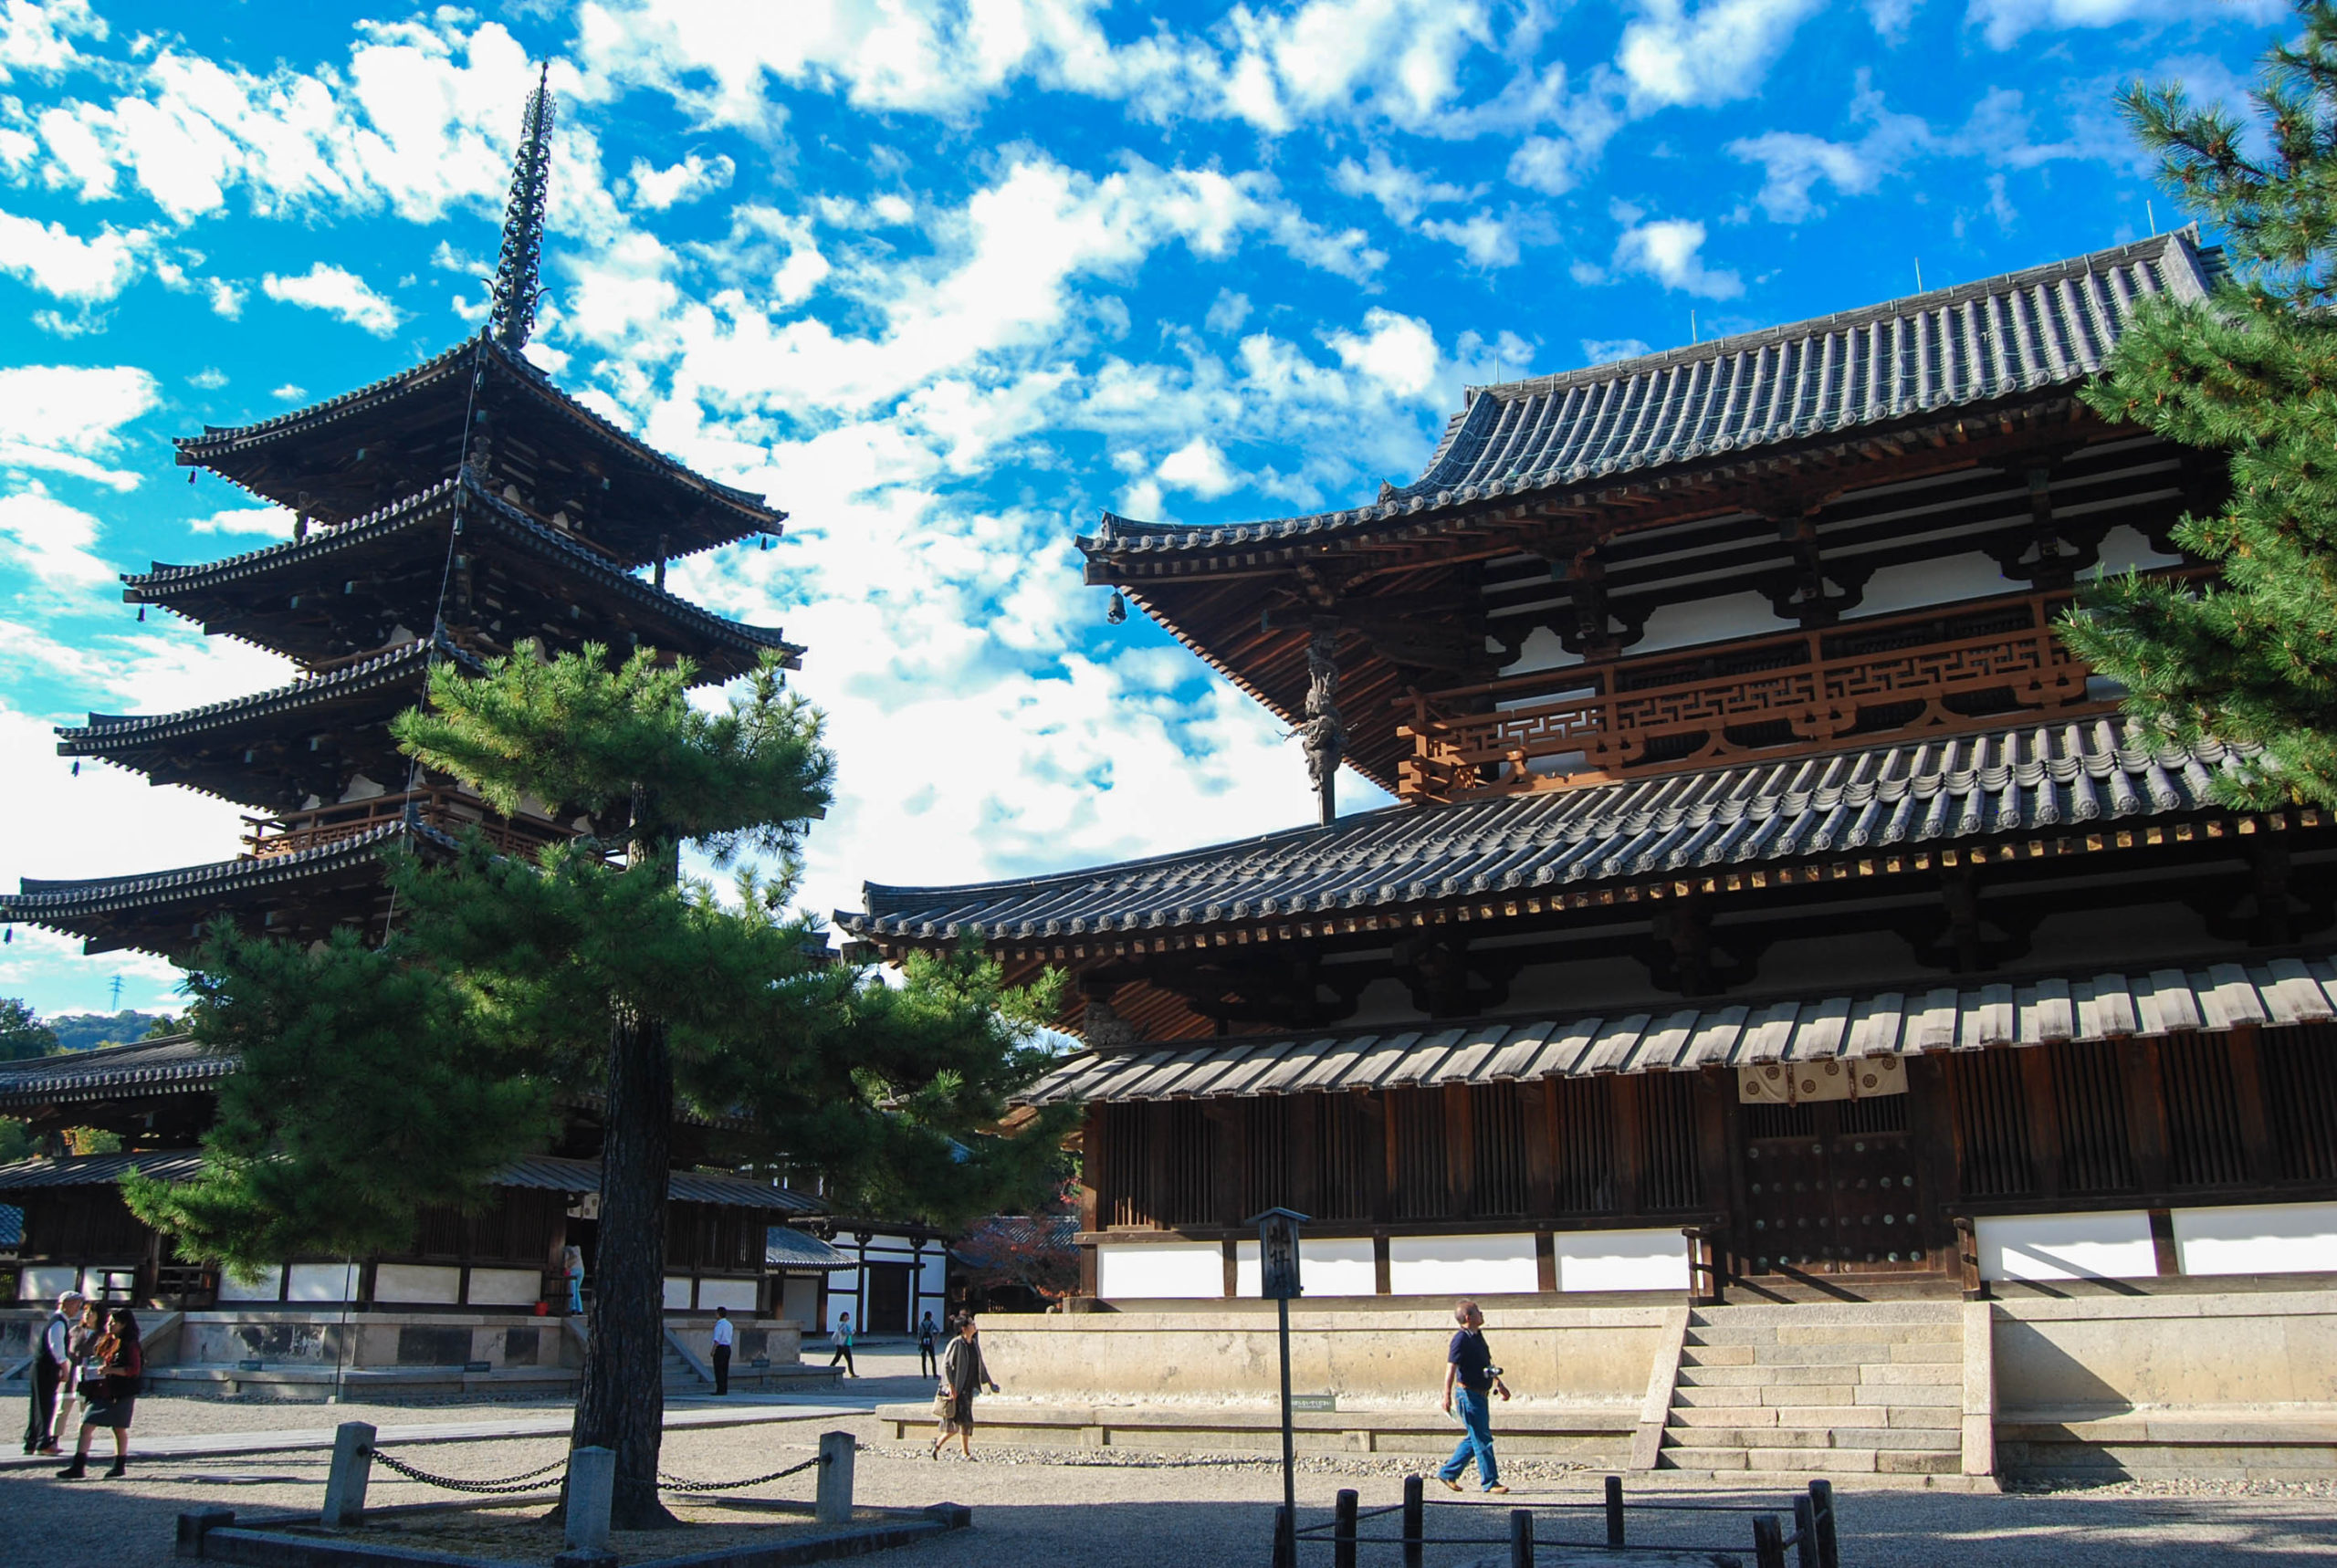 Horyuji Temple and its pagoda in Nara, Japan